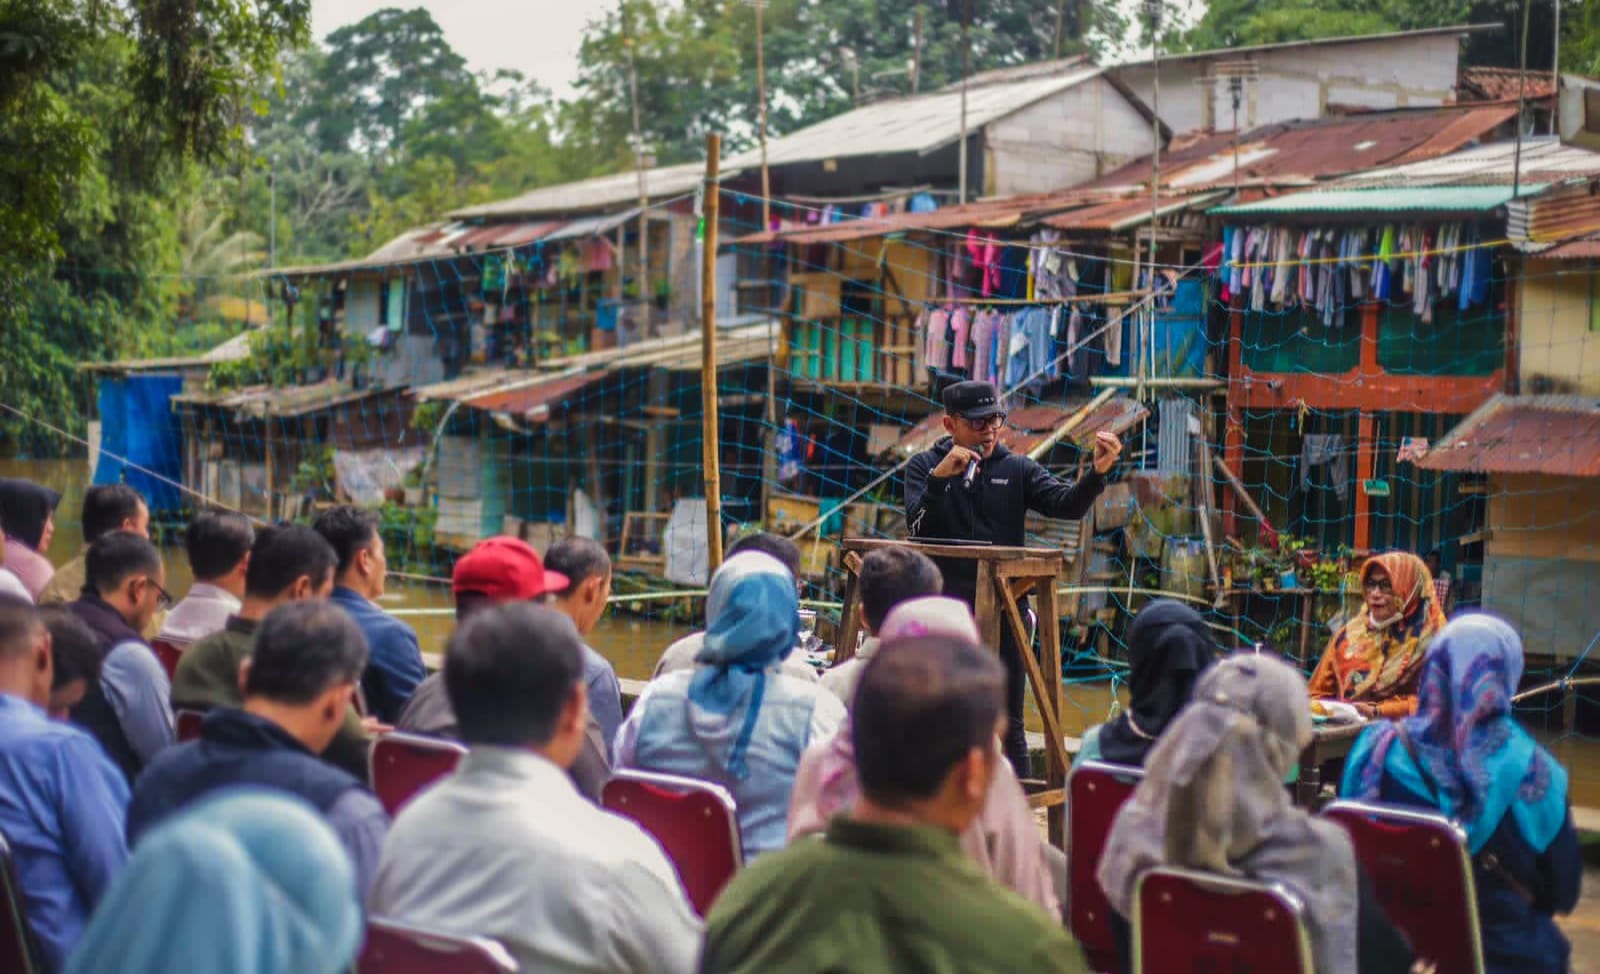 Wali Kota Bogor Bima Arya saat memimpin briefing staf di tengah permukiman warga Ciwaringin, Kelurahan Cibogor, Kecamatan Bogor Tengah, Kota Bogor. (Yudha Prananda / Humpro)